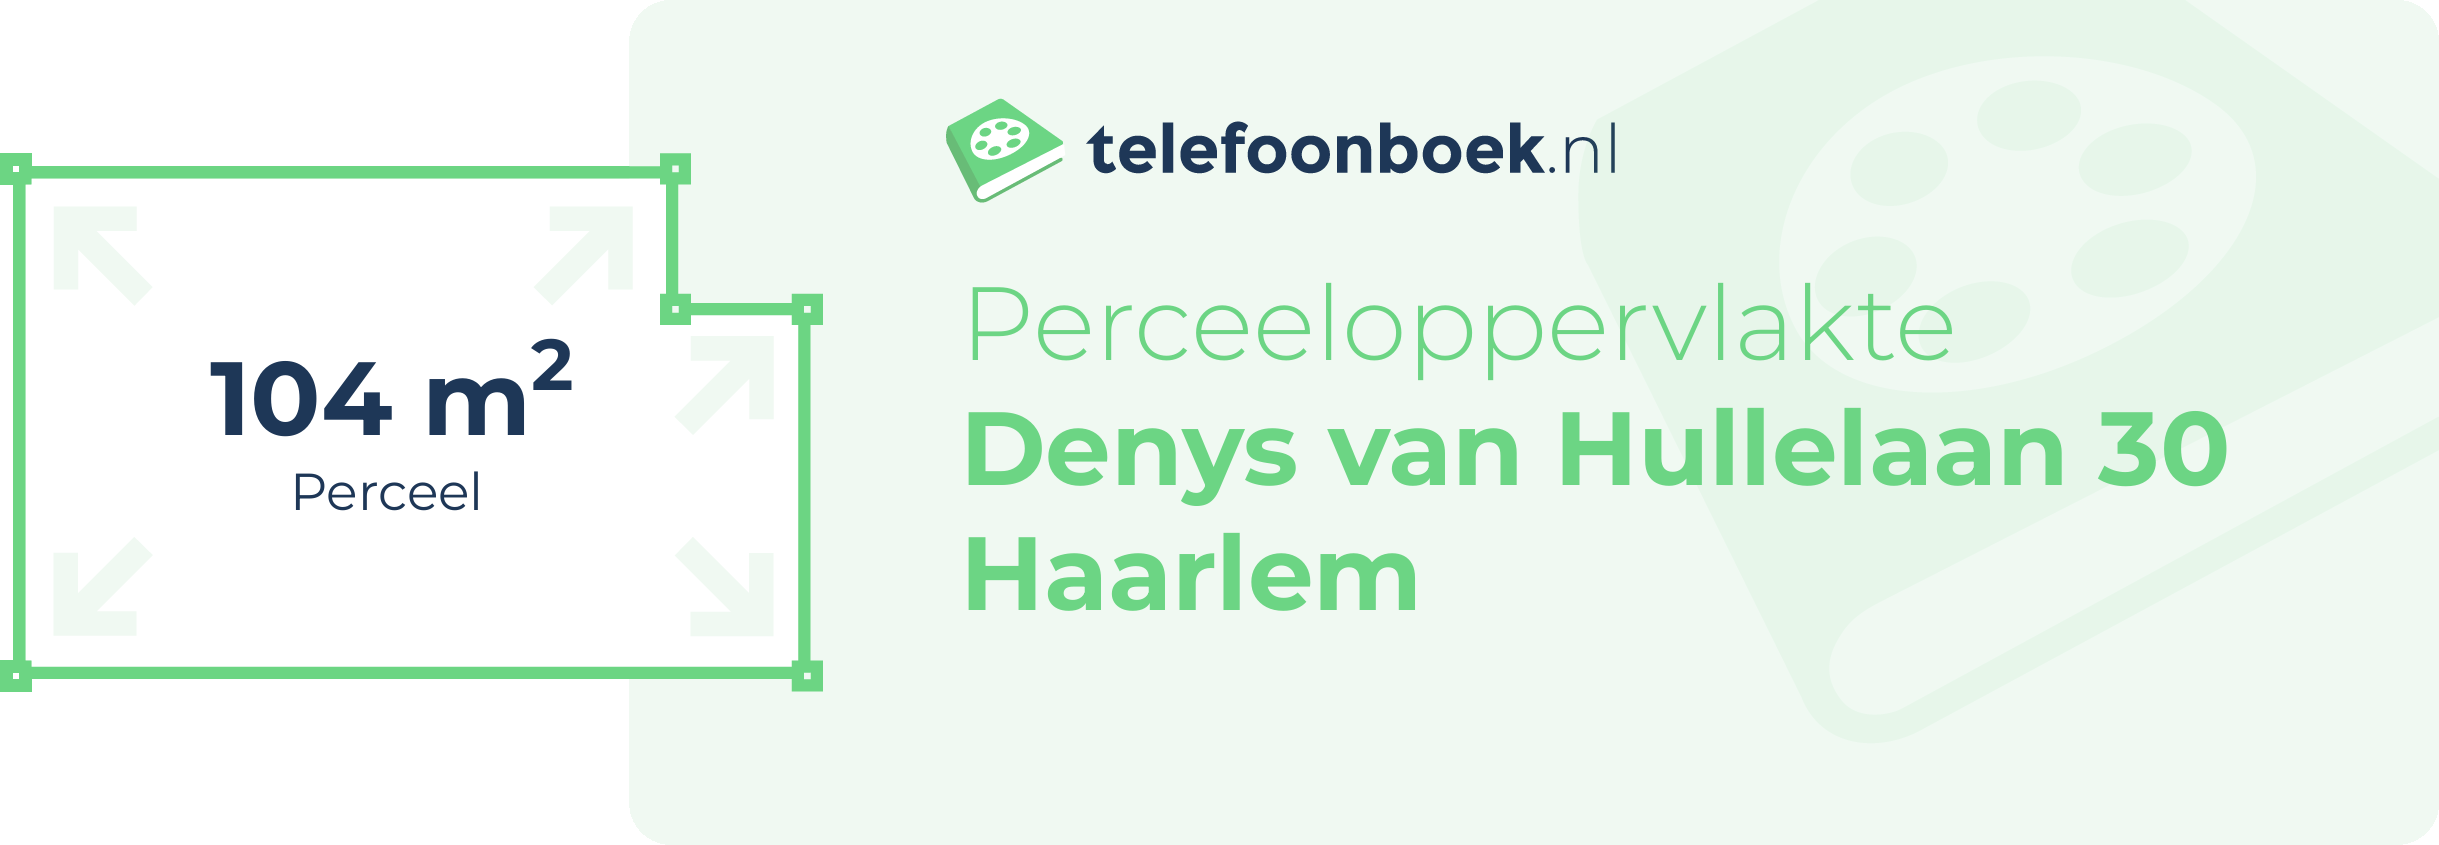 Perceeloppervlakte Denys Van Hullelaan 30 Haarlem